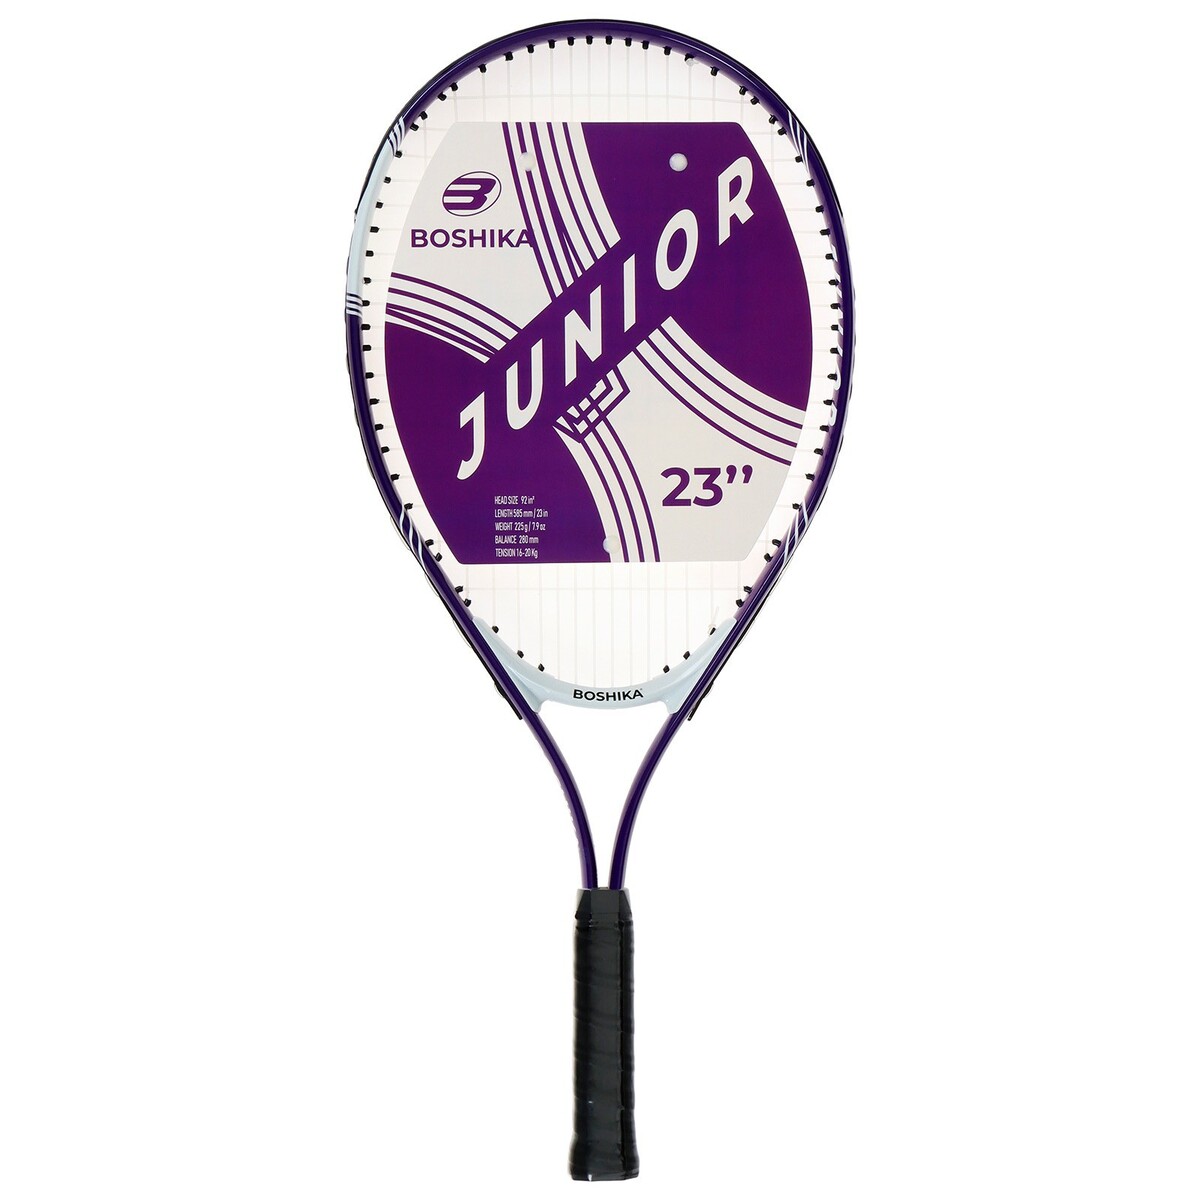 Ракетка для большого тенниса детская boshika junior, алюминий, 23'', цвет фиолетовый ракетка для настольного тенниса atemi 300 cv